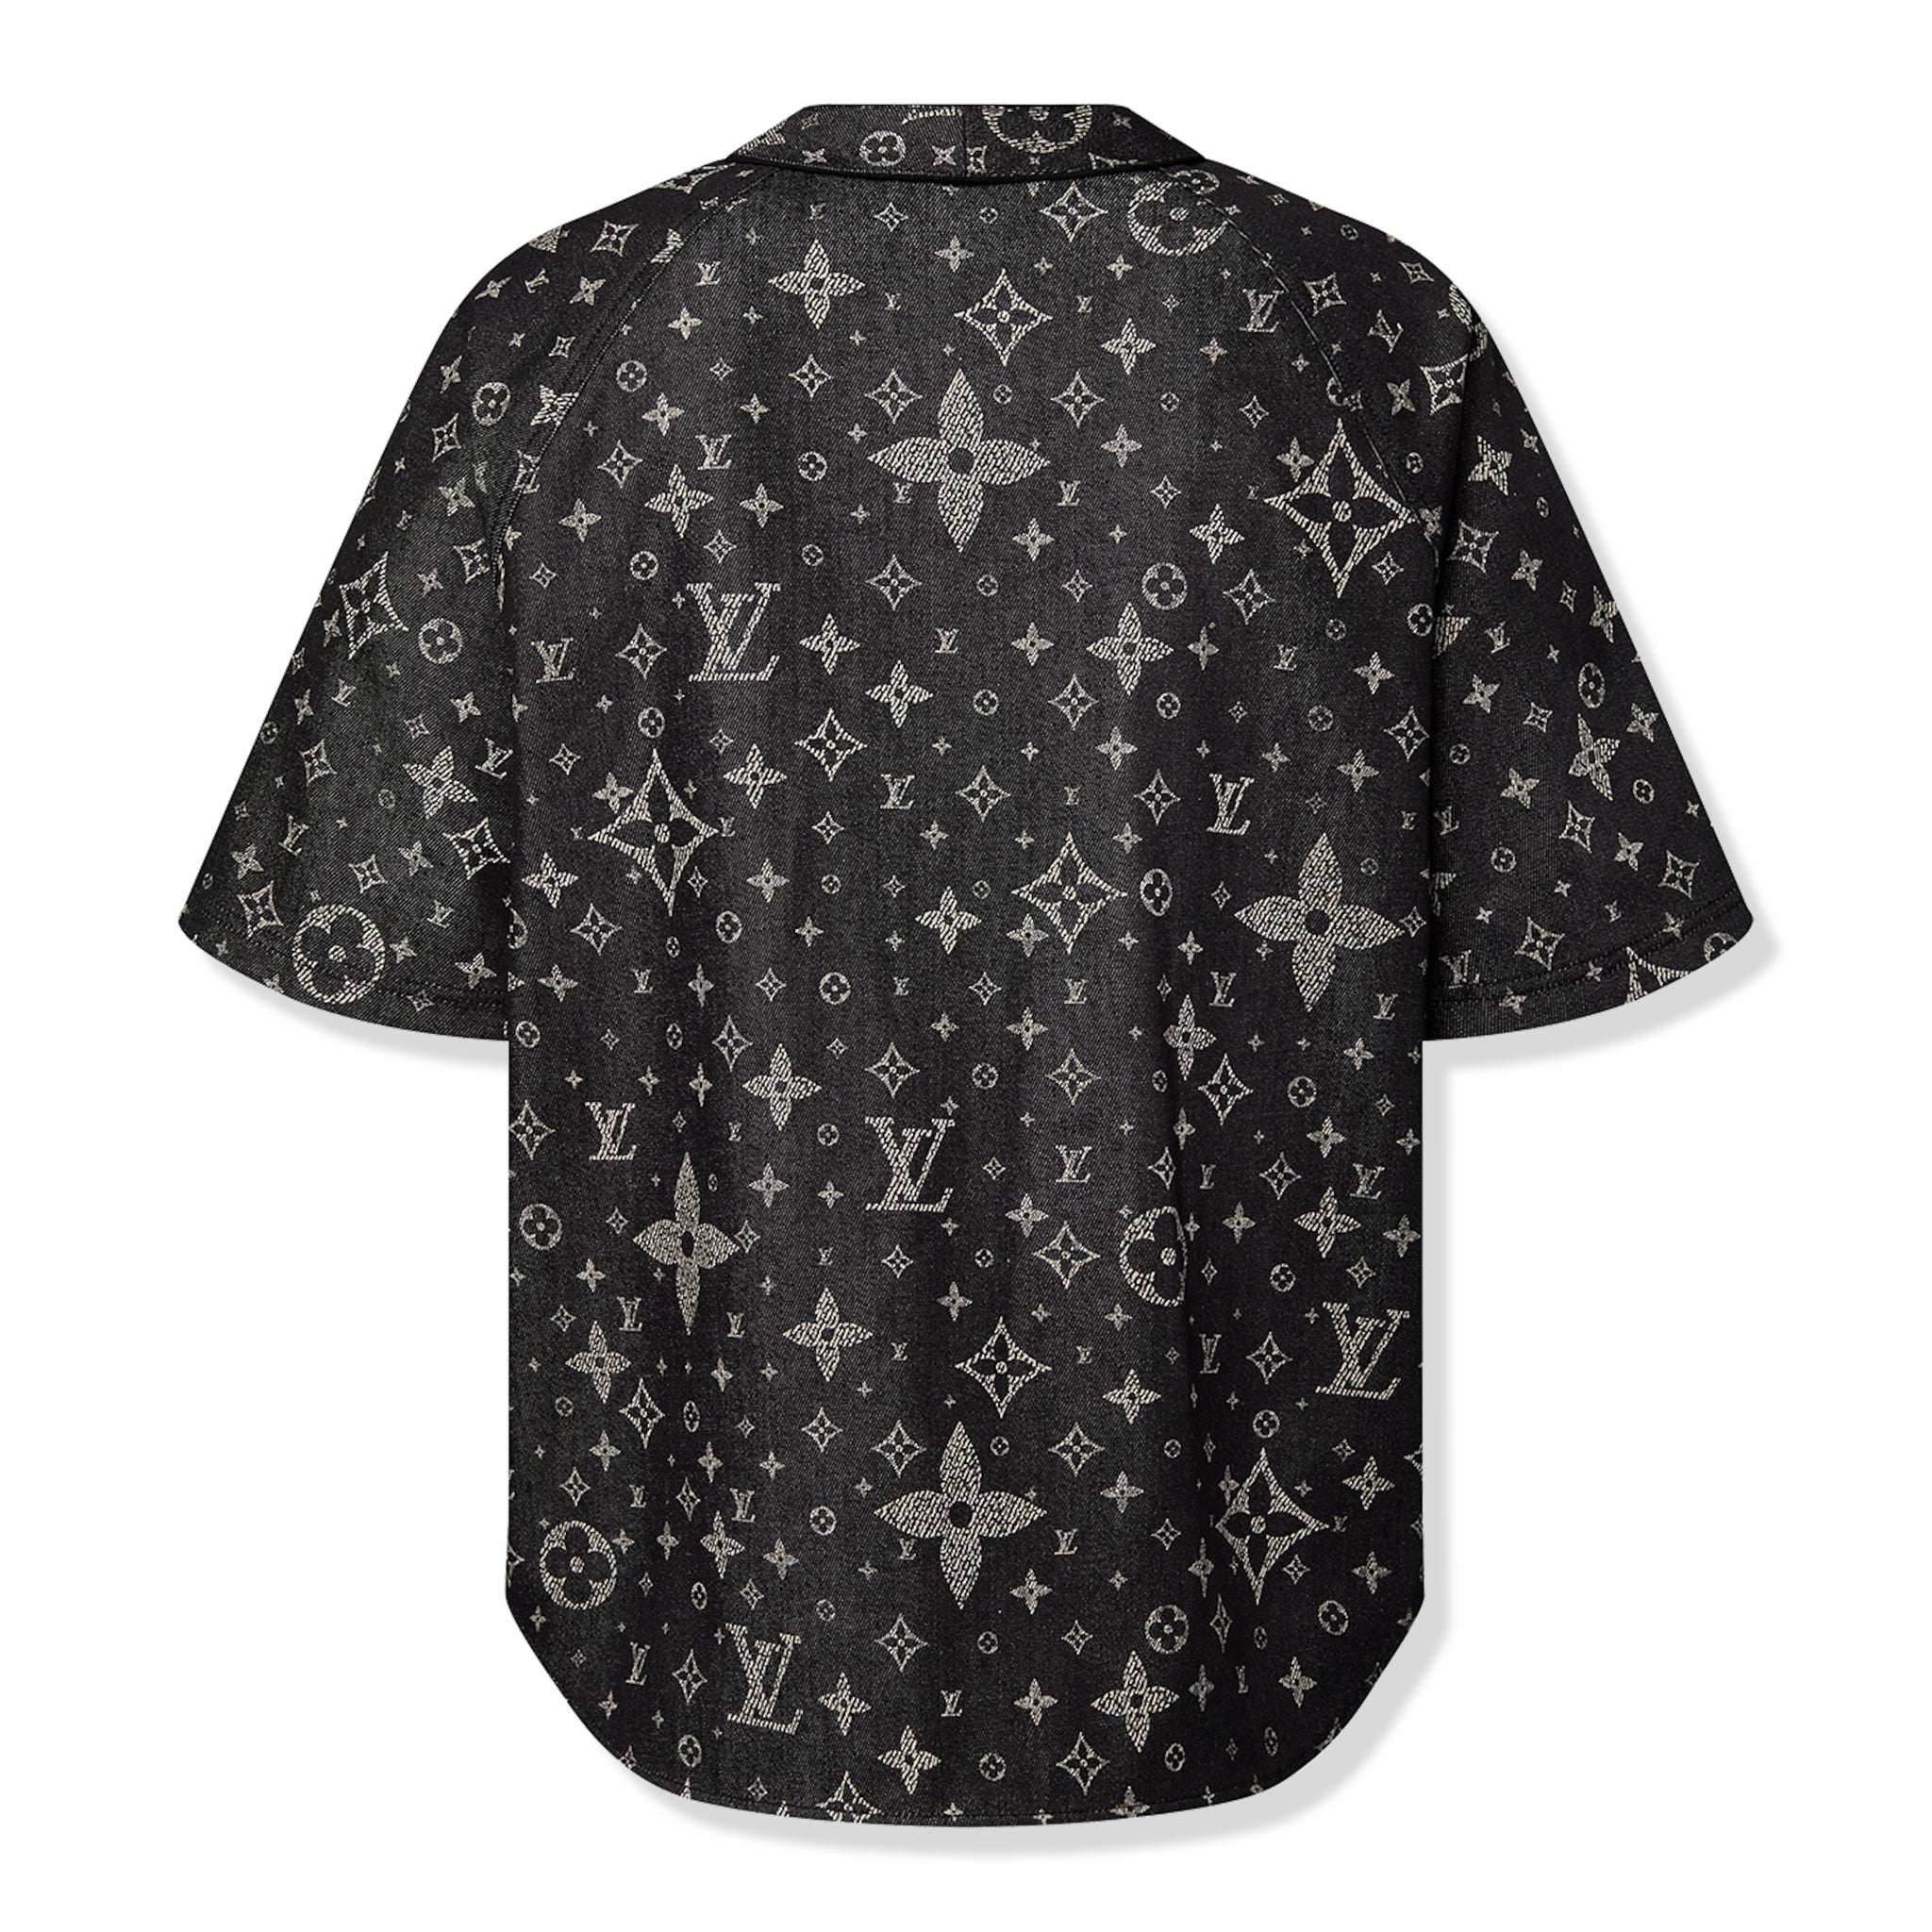 BAck view of Louis Vuitton Monogram Denim Black Baseball Shirt NVPROD4830078V